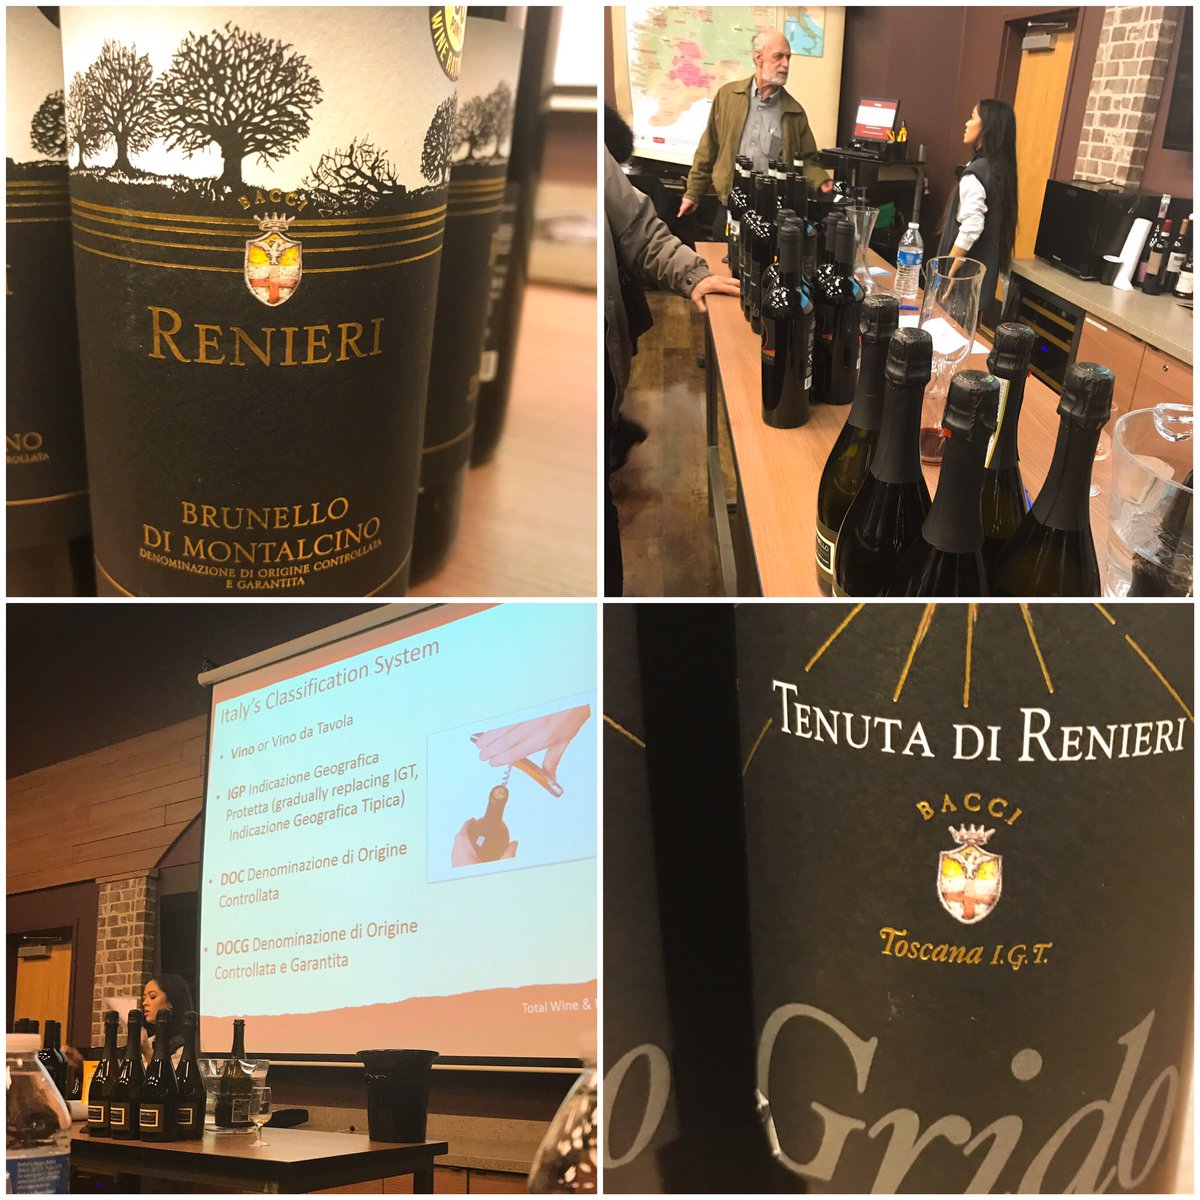 Tonight's #VinoItaliano #wineclass at @TotalWine in #RiverEdgeNJ was favoloso! Bravo Bianca & Carl 🍷🥂👏🏻👏🏻 #tuscanywine #sangiovese #brunello #prosecco